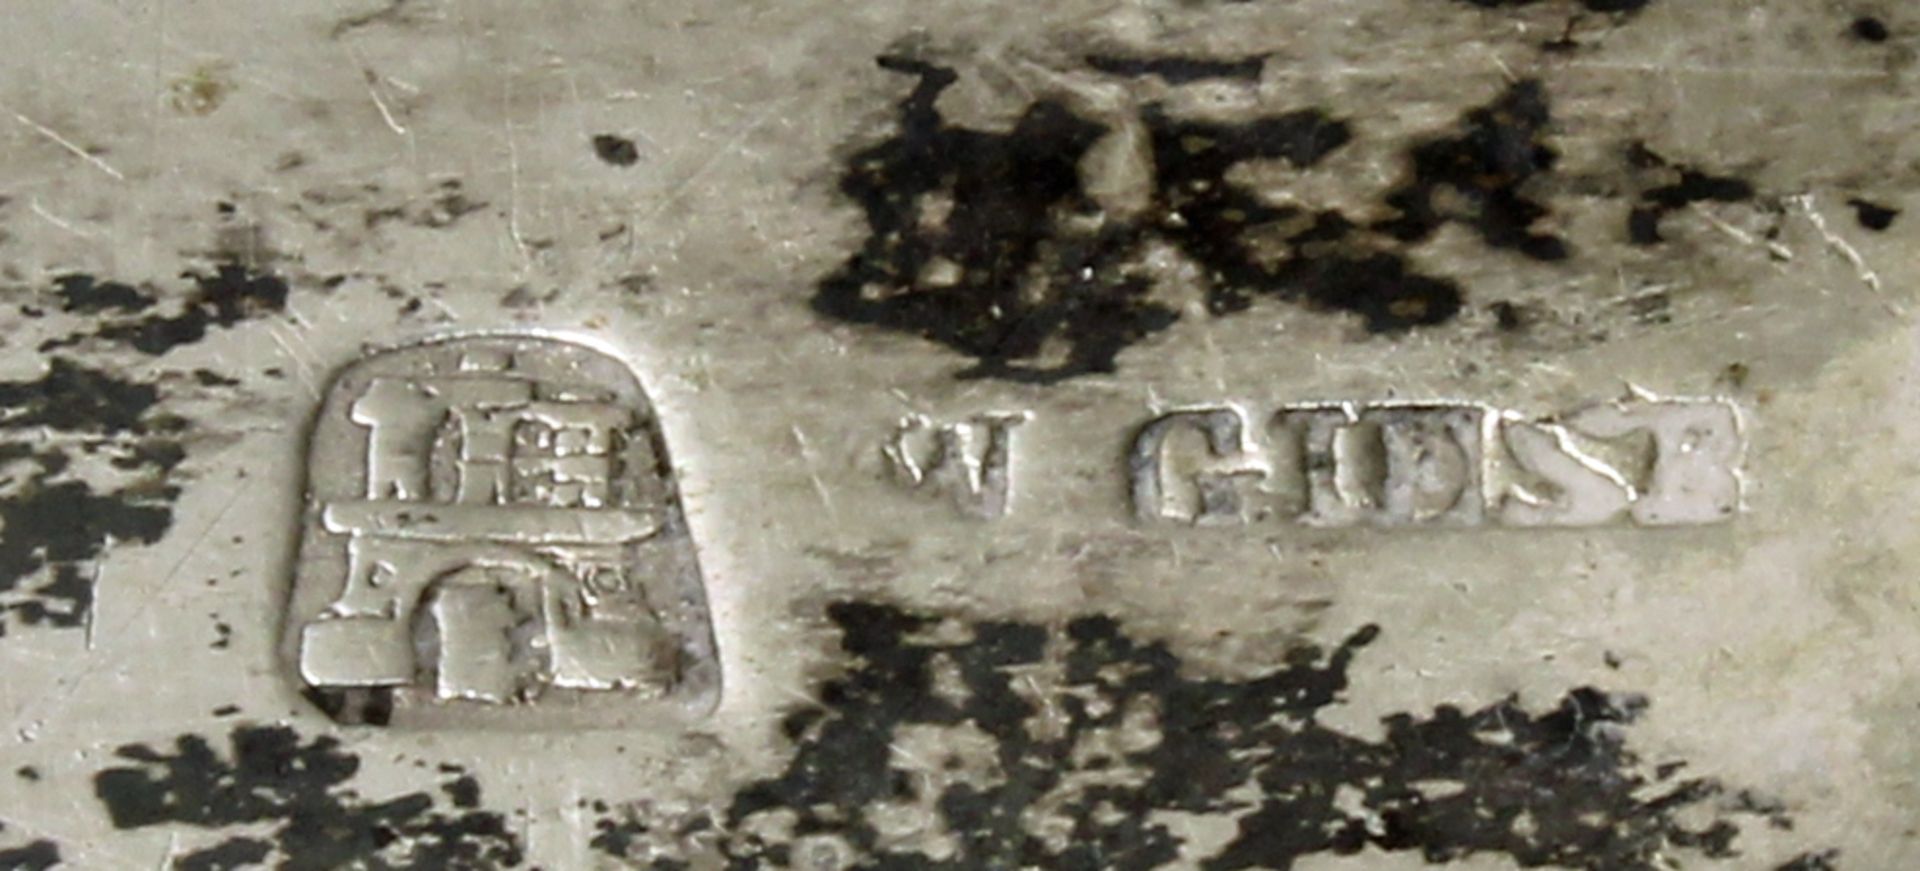 2 Suppenkellen, Silber, Hamburg, 19. Jh., Meistermarken ICS bzw. Giese, 1x Monogramm, ca. 33 cm hoc - Bild 3 aus 4